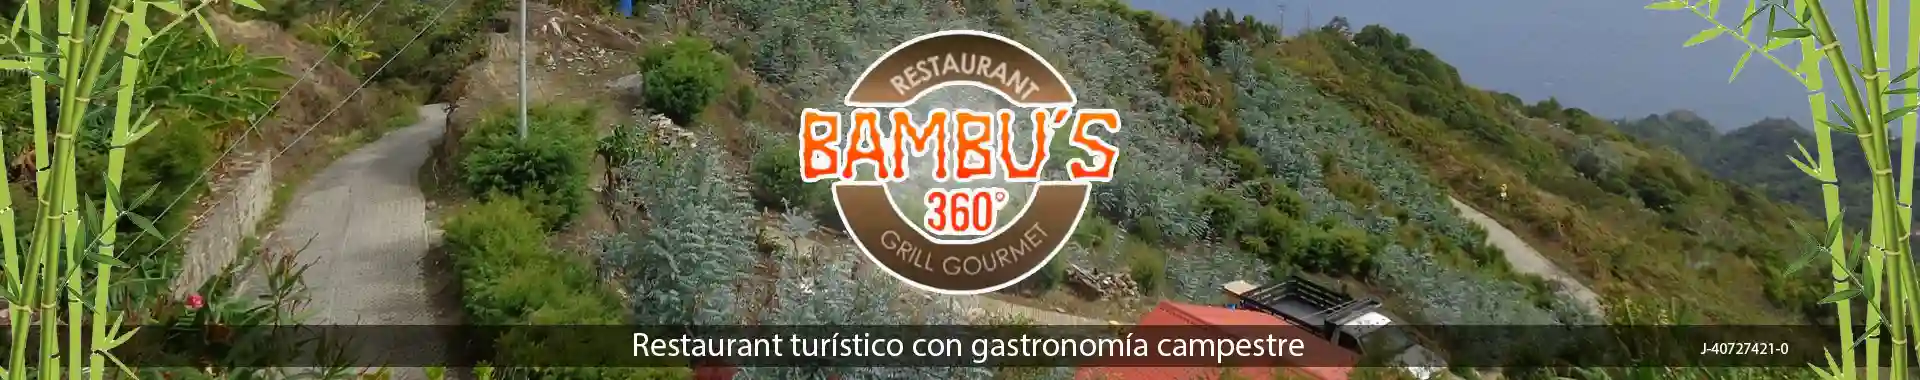 Imagen 1 del perfil de Restaurant Bambu's 360º Grill Gourmet - Galipan